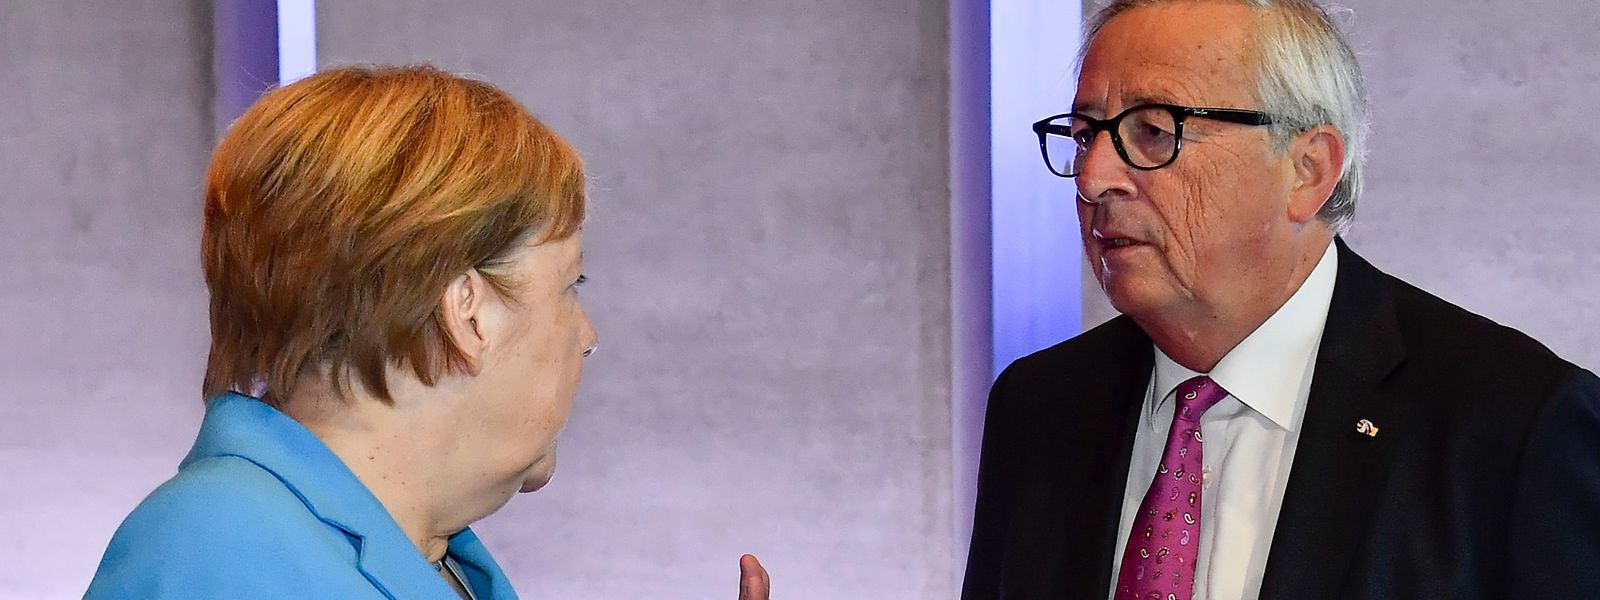 Die deutsche Bundeskanzlerin Angela Merkel und Jean-Claude Juncker, Präsident der Europäischen Kommission, während des informellen EU-Gipfels.